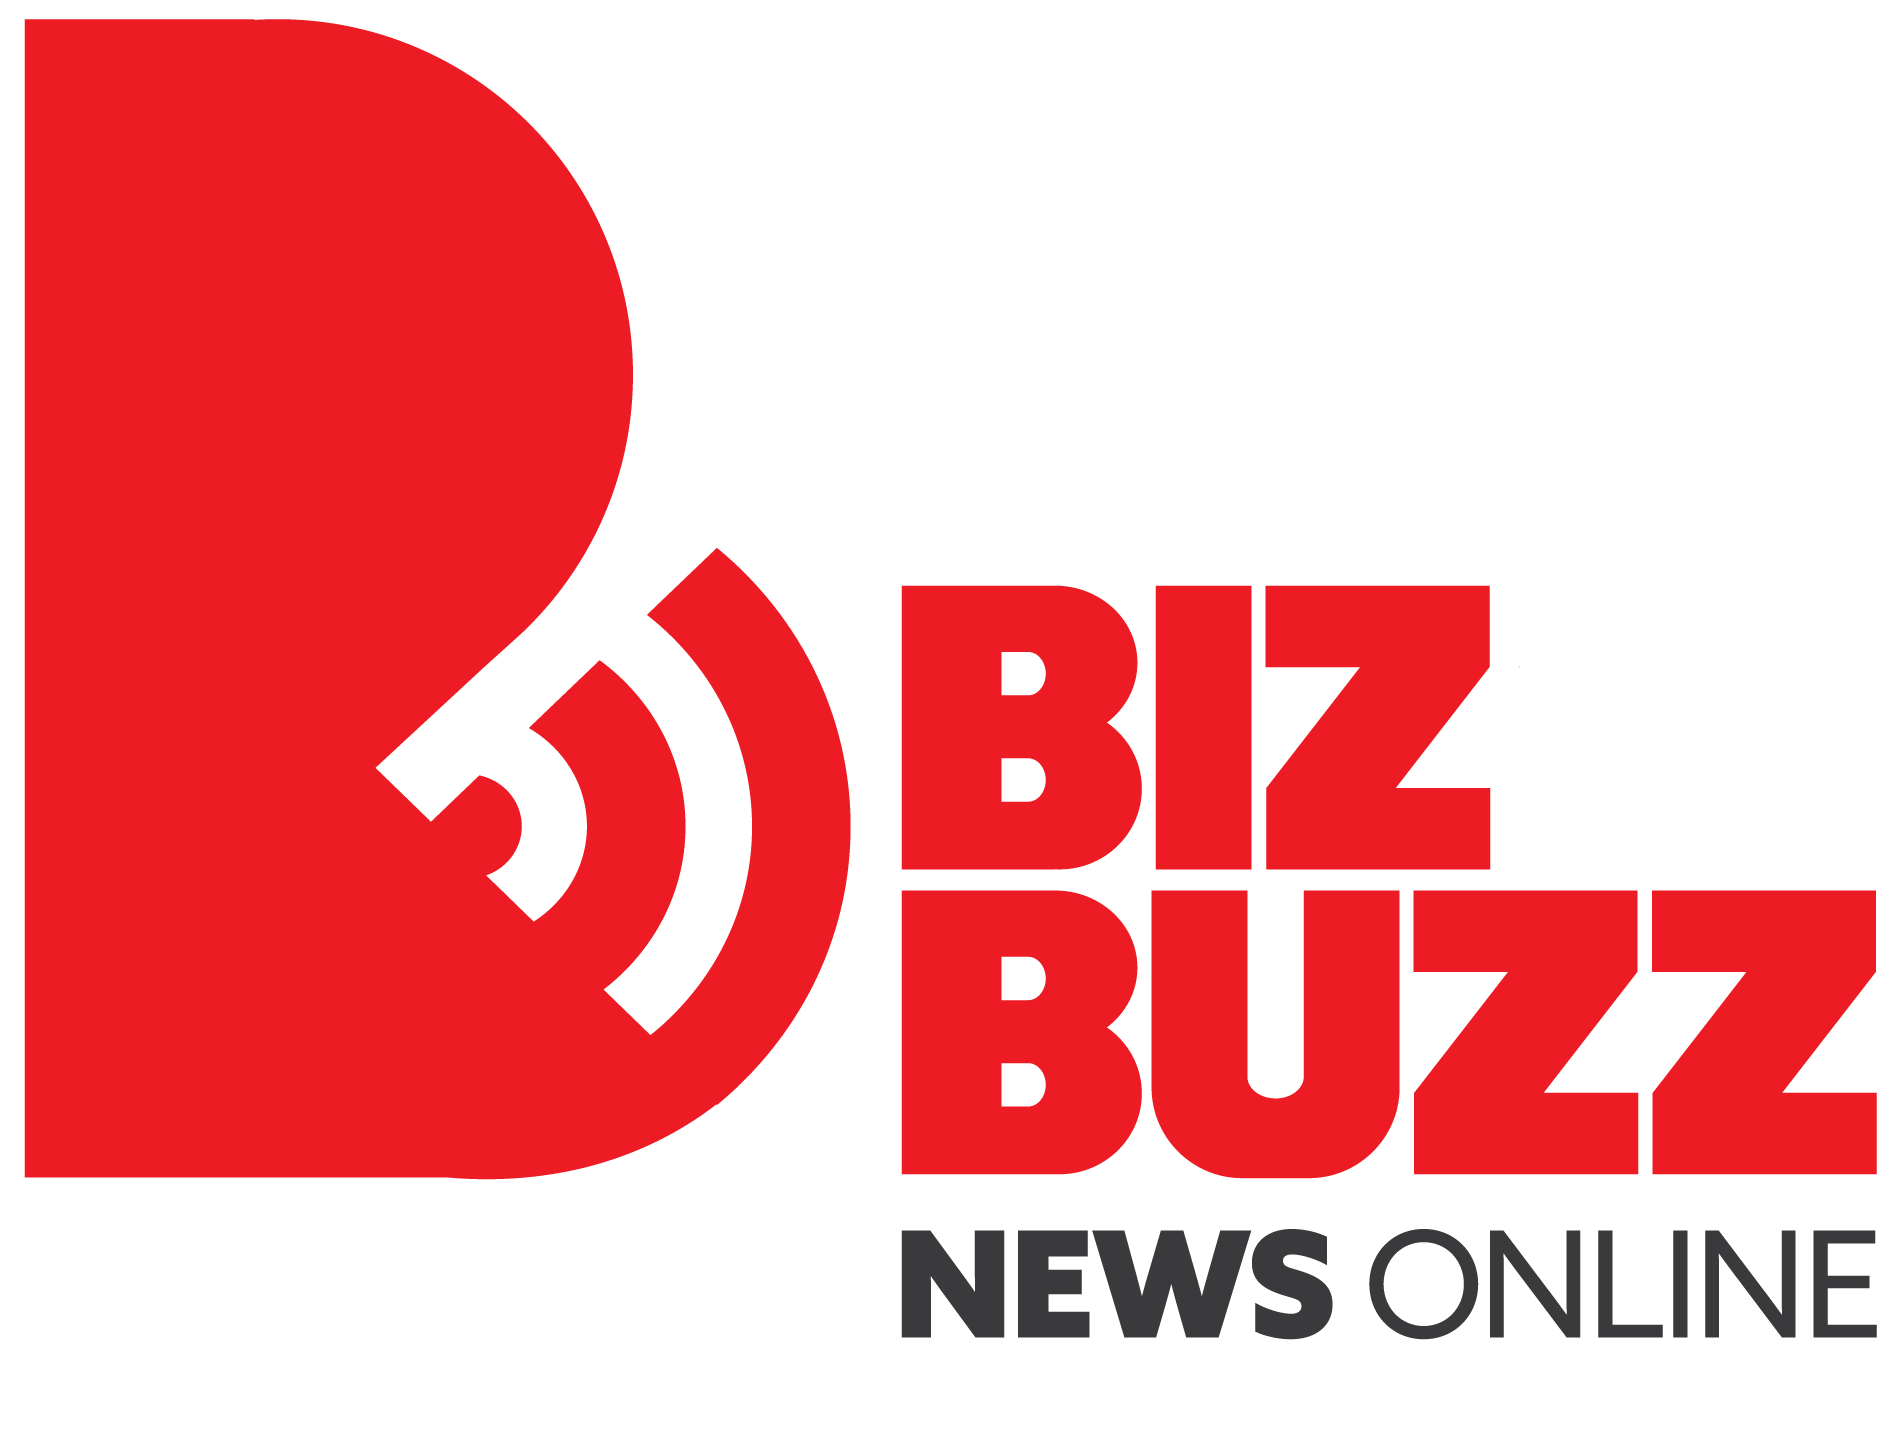 bizbuzznewsonline.com